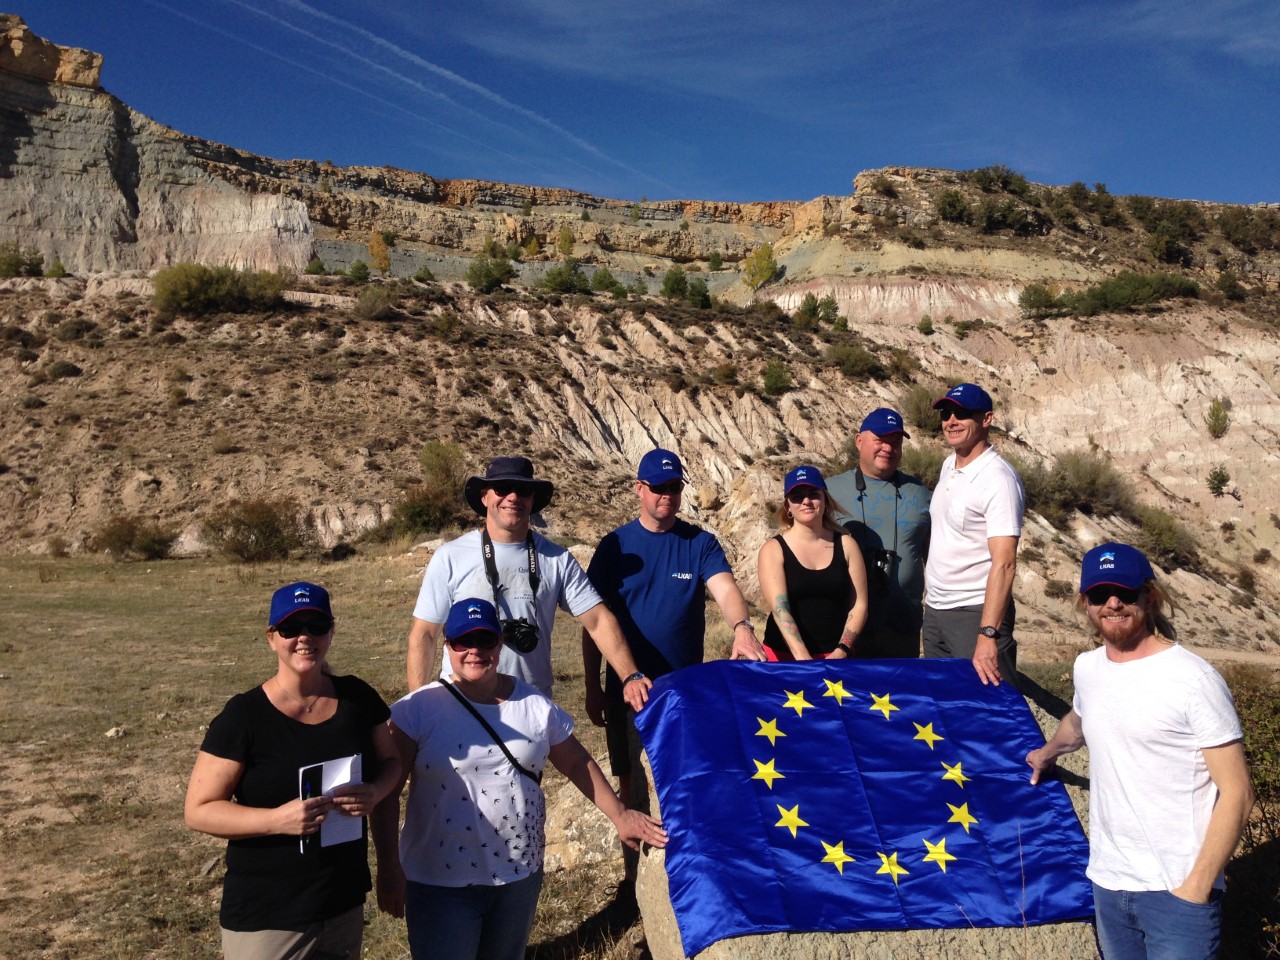 Visita de un grupo de expertos en minería y restauración minera vinculados a la mina de Kiruna (Suecia) a la mina Santa Engracia (Guadalajara, España) – 8 de Octubre de 2019